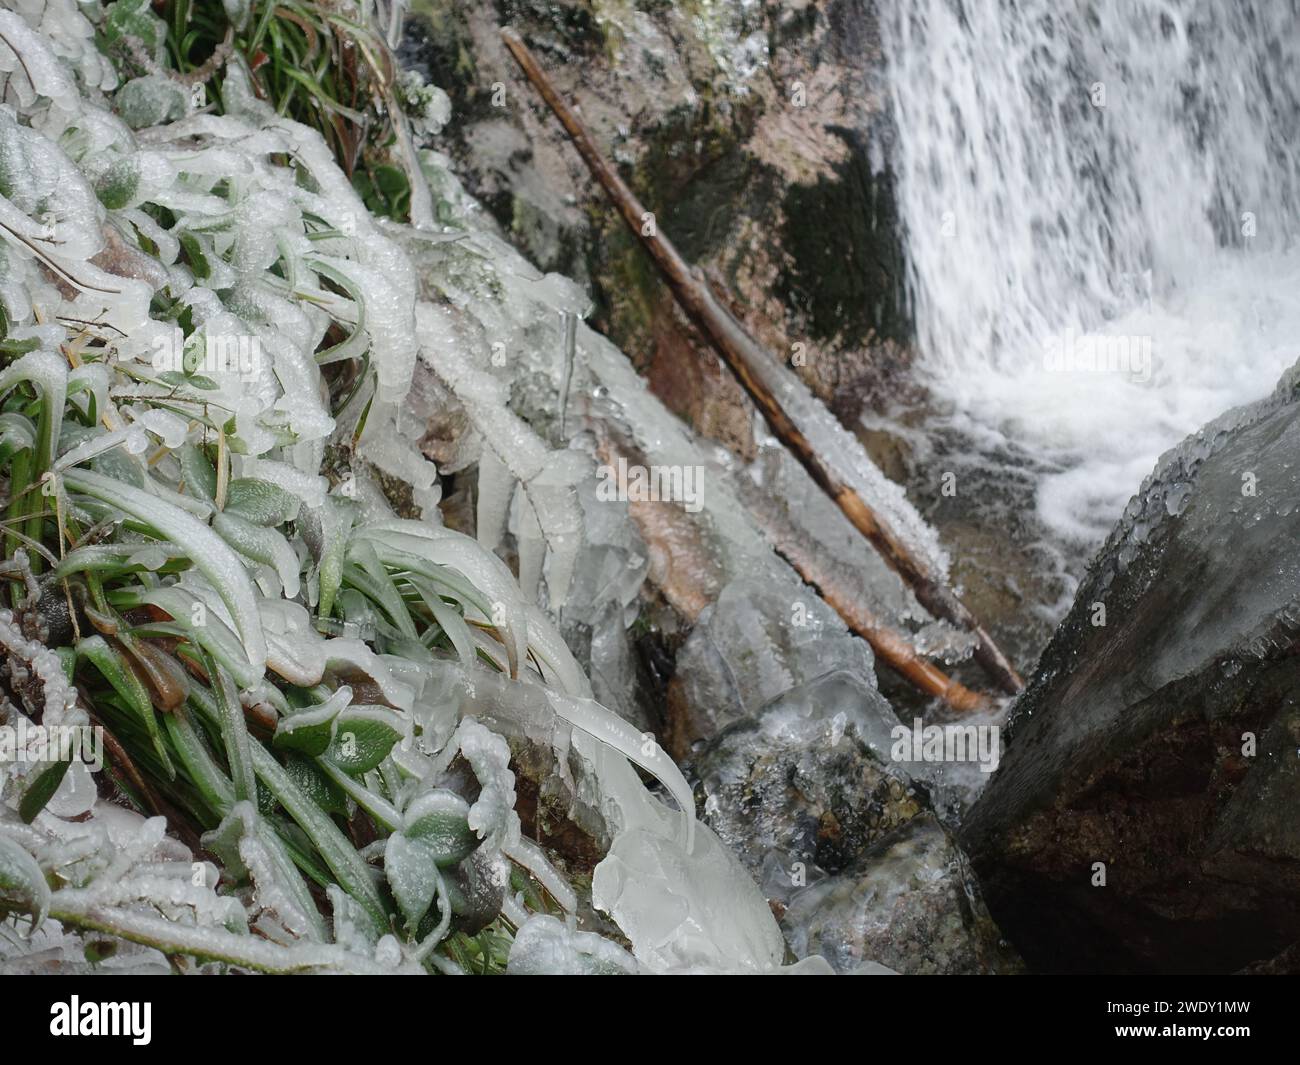 Un paesaggio sereno caratterizzato da acqua ghiacciata che scorre accanto a massi massicci in un ambiente boscoso, adornato da una vegetazione lussureggiante Foto Stock